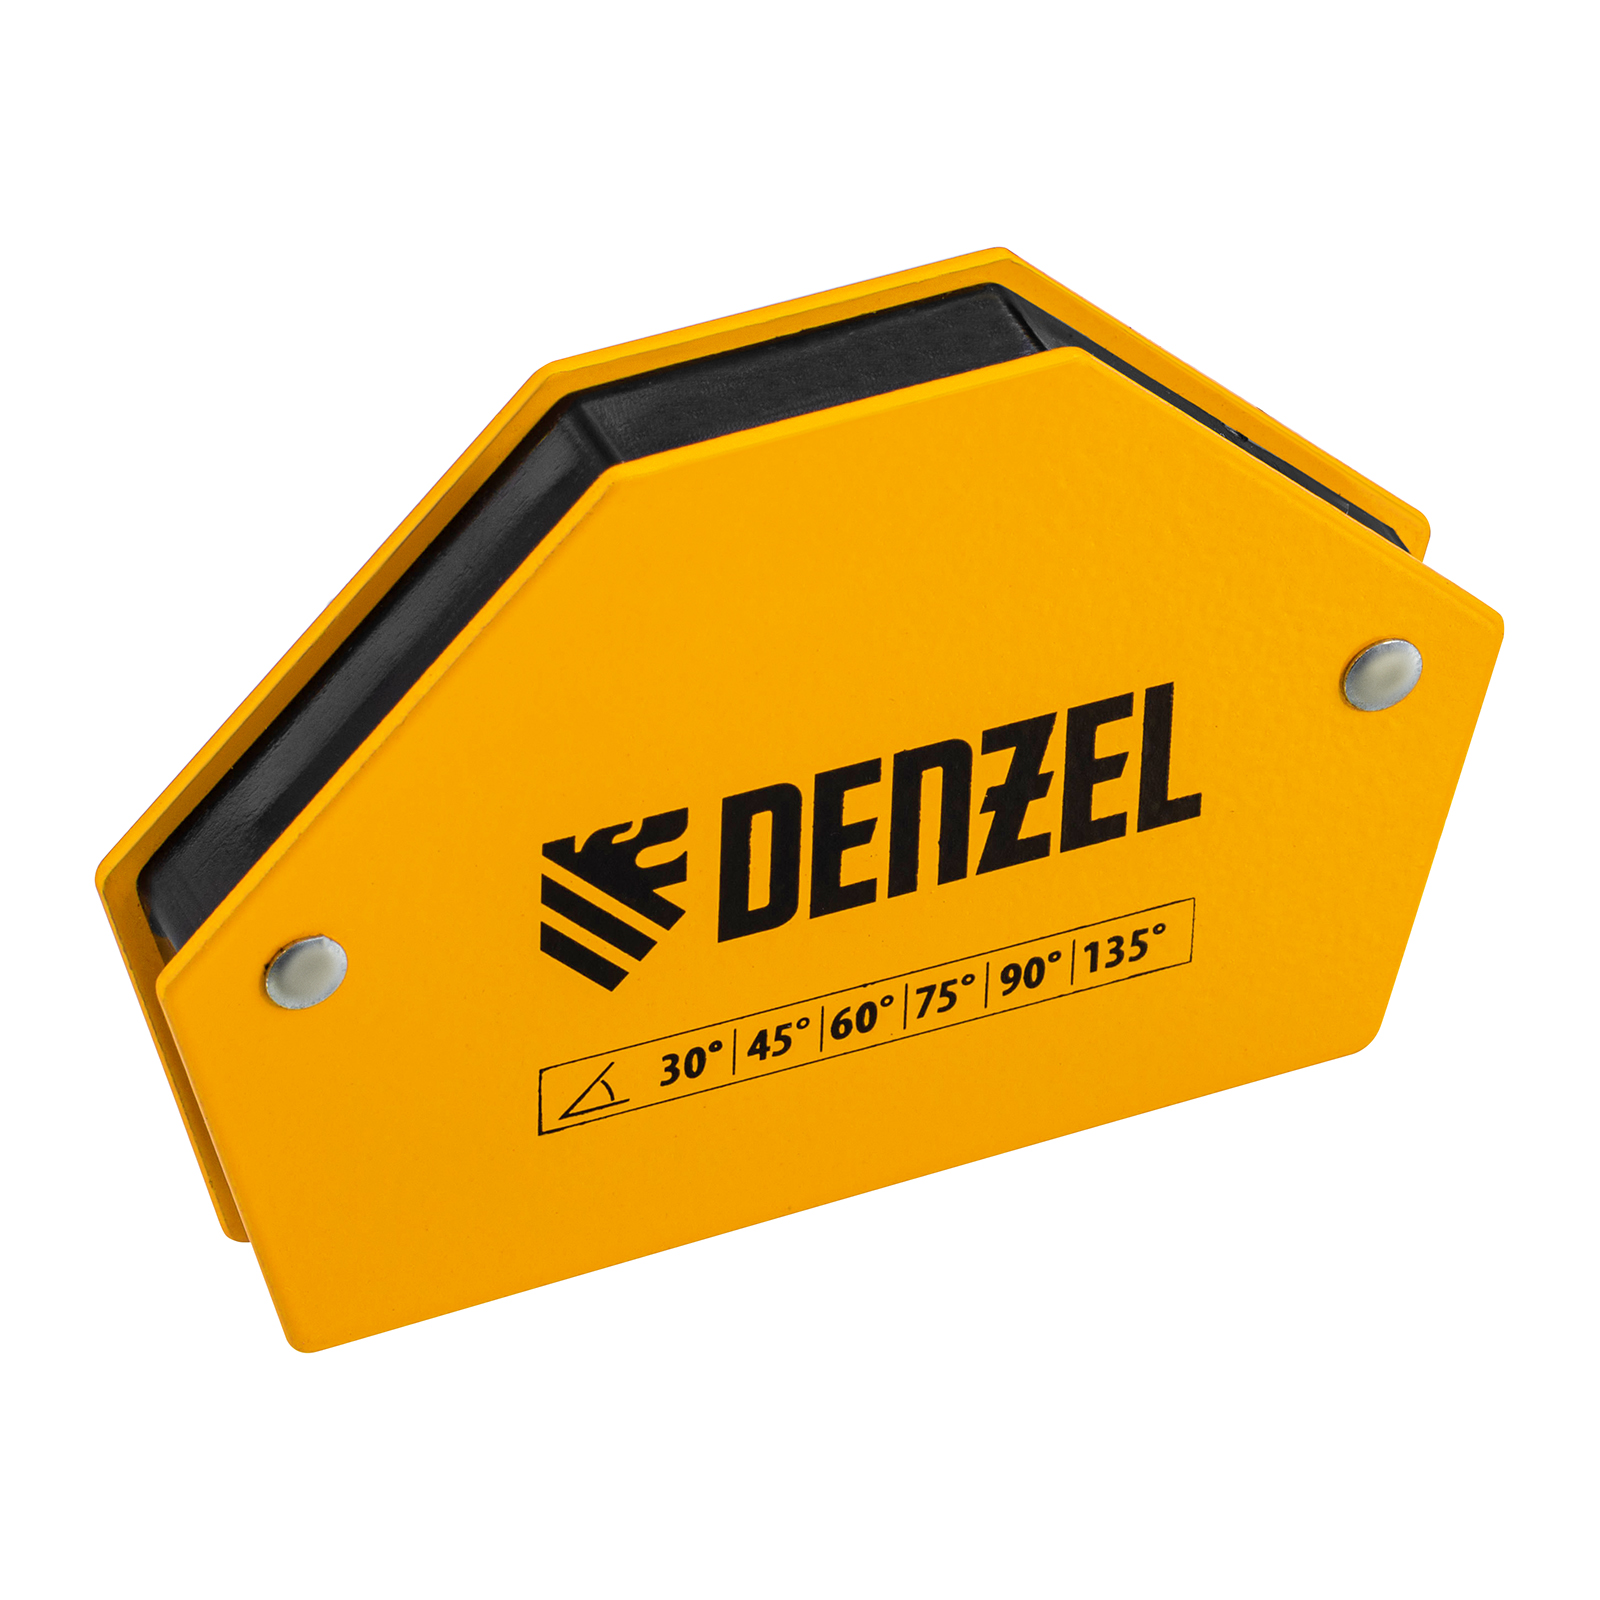 Фиксатор магнитный для сварочных работ DENZEL усилие 25 LB, 30х45х60х75х90х135 град. 97552 фиксатор магнитный мф 350